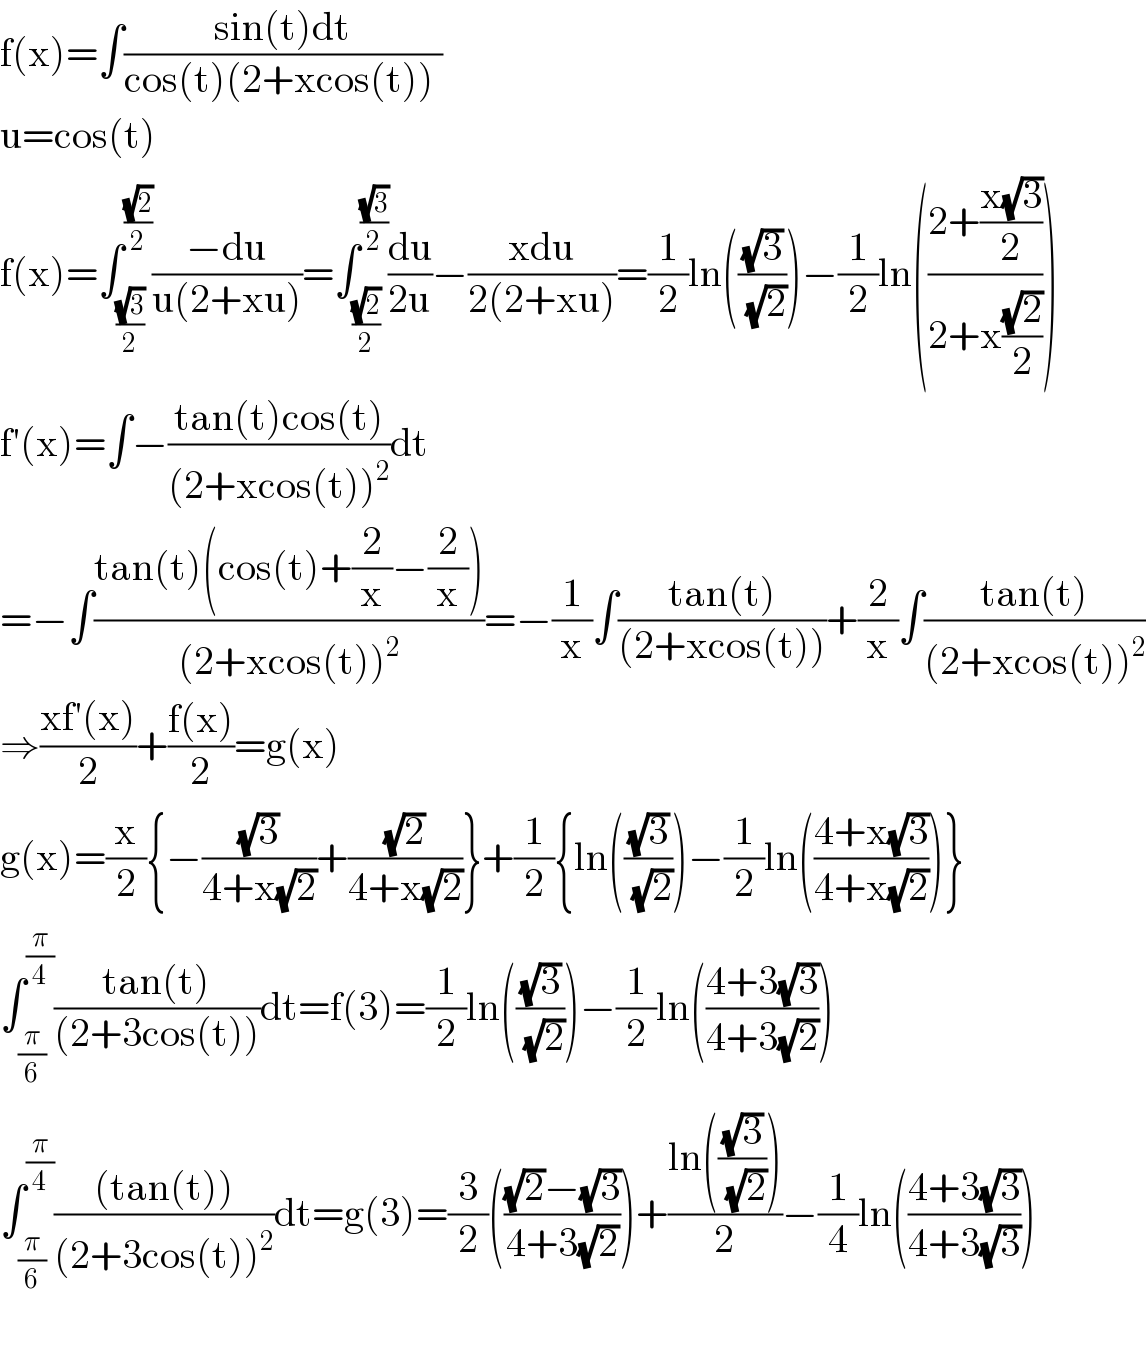 f(x)=∫((sin(t)dt)/(cos(t)(2+xcos(t)) ))  u=cos(t)  f(x)=∫_((√3)/2) ^((√2)/2) ((−du)/(u(2+xu)))=∫_((√2)/2) ^((√3)/2) (du/(2u))−((xdu)/(2(2+xu)))=(1/2)ln(((√3)/(√2)))−(1/2)ln(((2+((x(√3))/2))/(2+x((√2)/2))))  f′(x)=∫−((tan(t)cos(t))/((2+xcos(t))^2 ))dt  =−∫((tan(t)(cos(t)+(2/x)−(2/x)))/((2+xcos(t))^2 ))=−(1/x)∫((tan(t))/((2+xcos(t))))+(2/x)∫((tan(t))/((2+xcos(t))^2 ))  ⇒((xf′(x))/2)+((f(x))/2)=g(x)  g(x)=(x/2){−((√3)/(4+x(√2)))+((√2)/(4+x(√2)))}+(1/2){ln(((√3)/(√2)))−(1/2)ln(((4+x(√3))/(4+x(√2))))}  ∫_(π/6) ^(π/4) ((tan(t))/((2+3cos(t))))dt=f(3)=(1/2)ln(((√3)/(√2)))−(1/2)ln(((4+3(√3))/(4+3(√2))))  ∫_(π/6) ^(π/4) (((tan(t)))/((2+3cos(t))^2 ))dt=g(3)=(3/2)((((√2)−(√3))/(4+3(√2))))+((ln(((√3)/(√2))))/2)−(1/4)ln(((4+3(√3))/(4+3(√3))))    